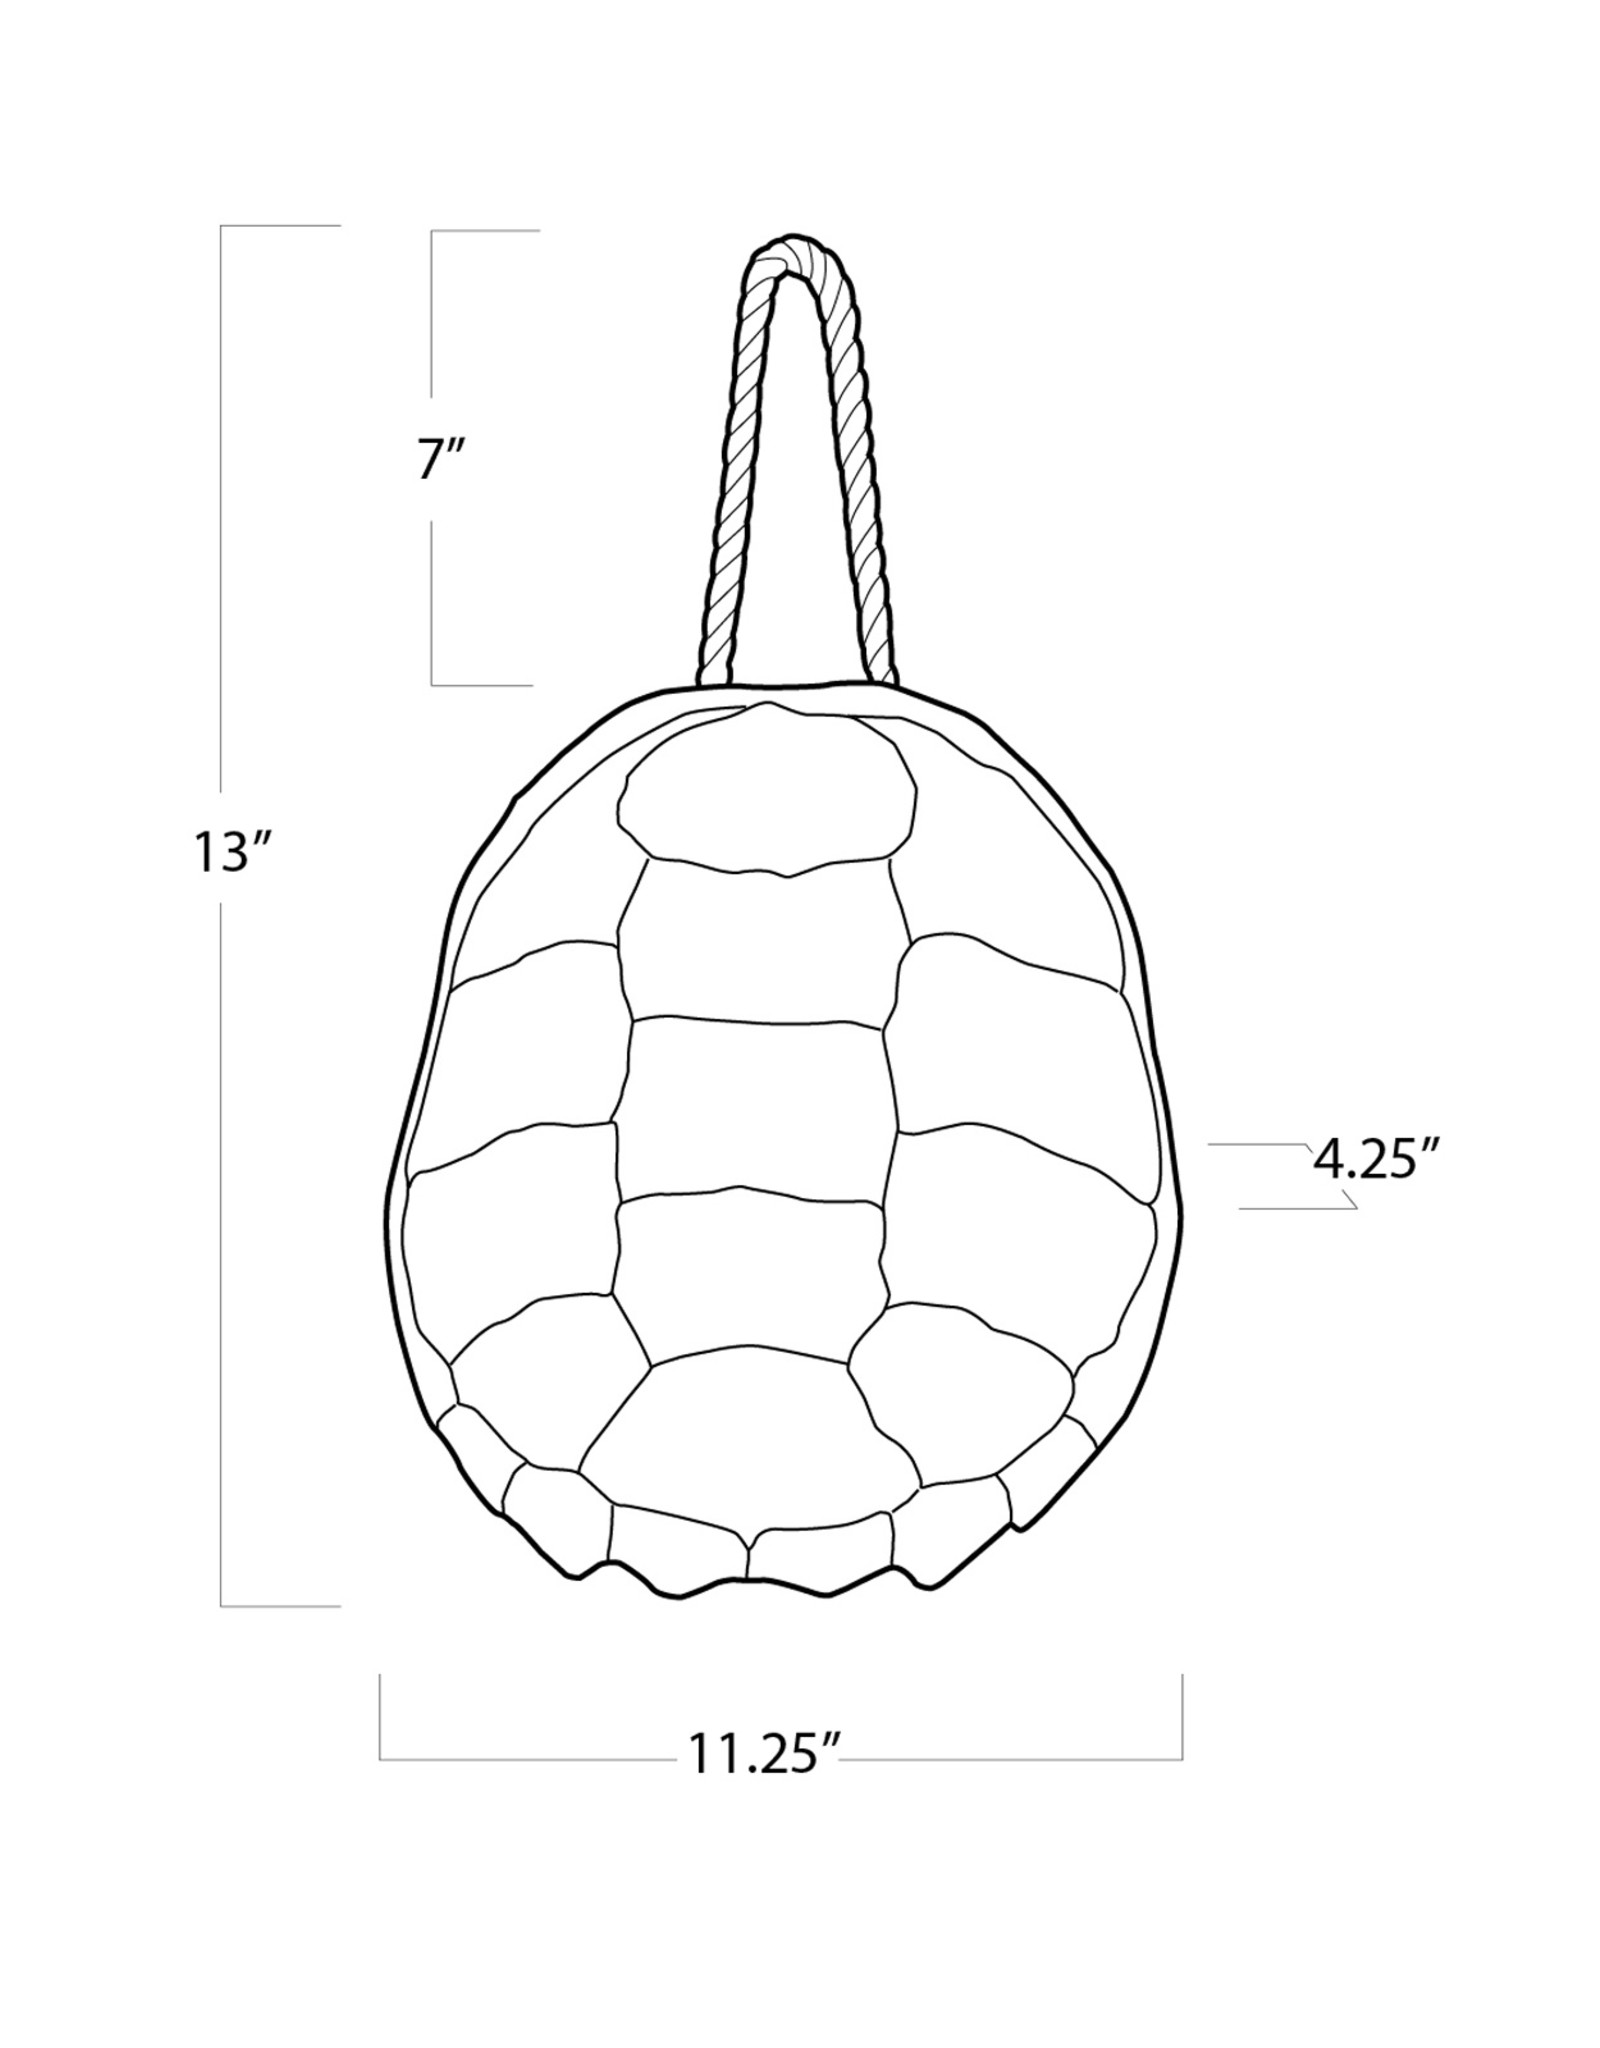 Regina Andrew Design Turtle Shell Accessory (Natural)